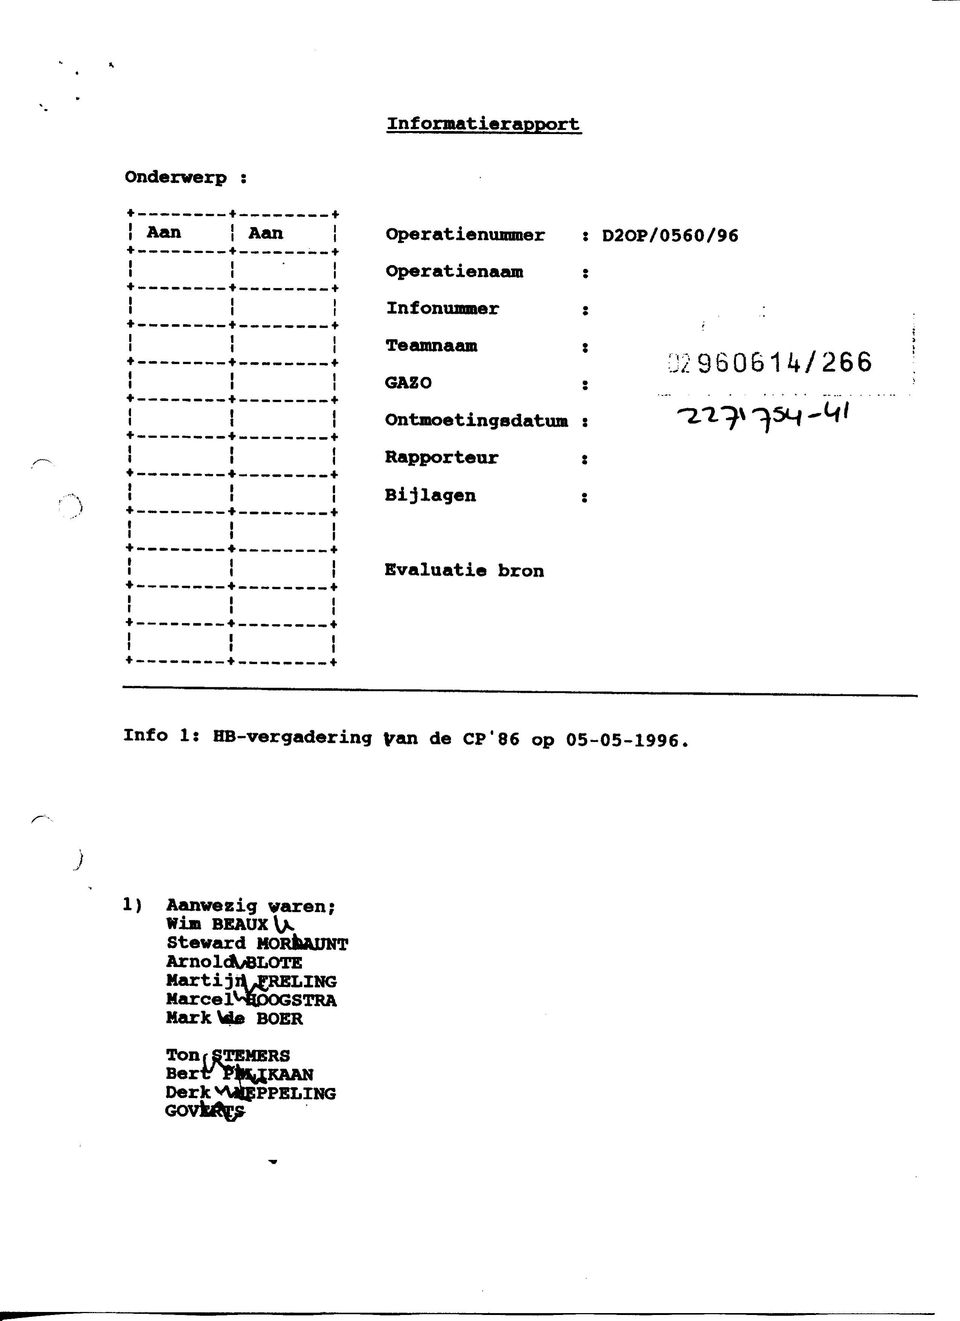 Rapporteur : Bijlagen : Ü296061W266 Evaluatie bron Info 1: HB-vergadering Van de CP'86 op 05-05-1996.